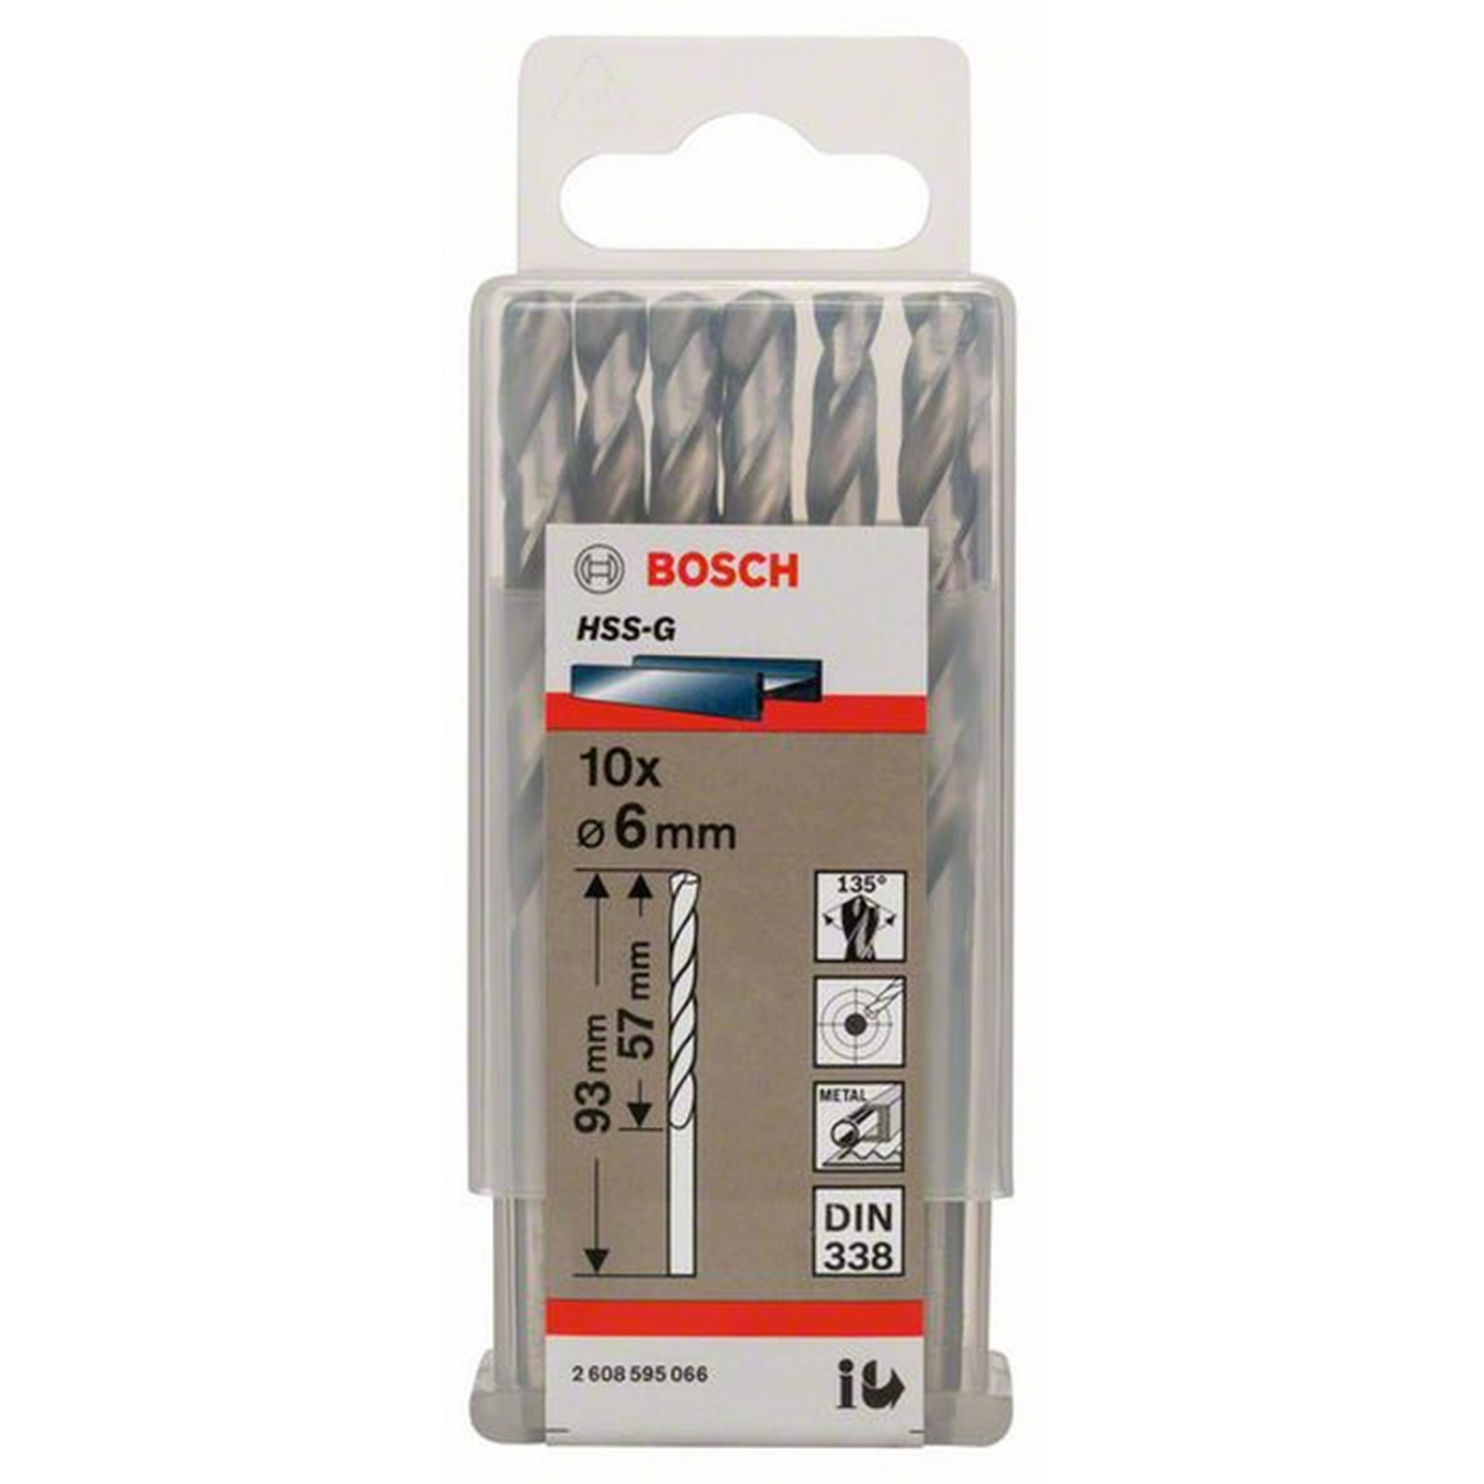 Сверло по металлу Bosch Eco 10 HSS-G 6мм 2608595066 сверло по металлу bosch eco 10 hss g 3мм 2608595055